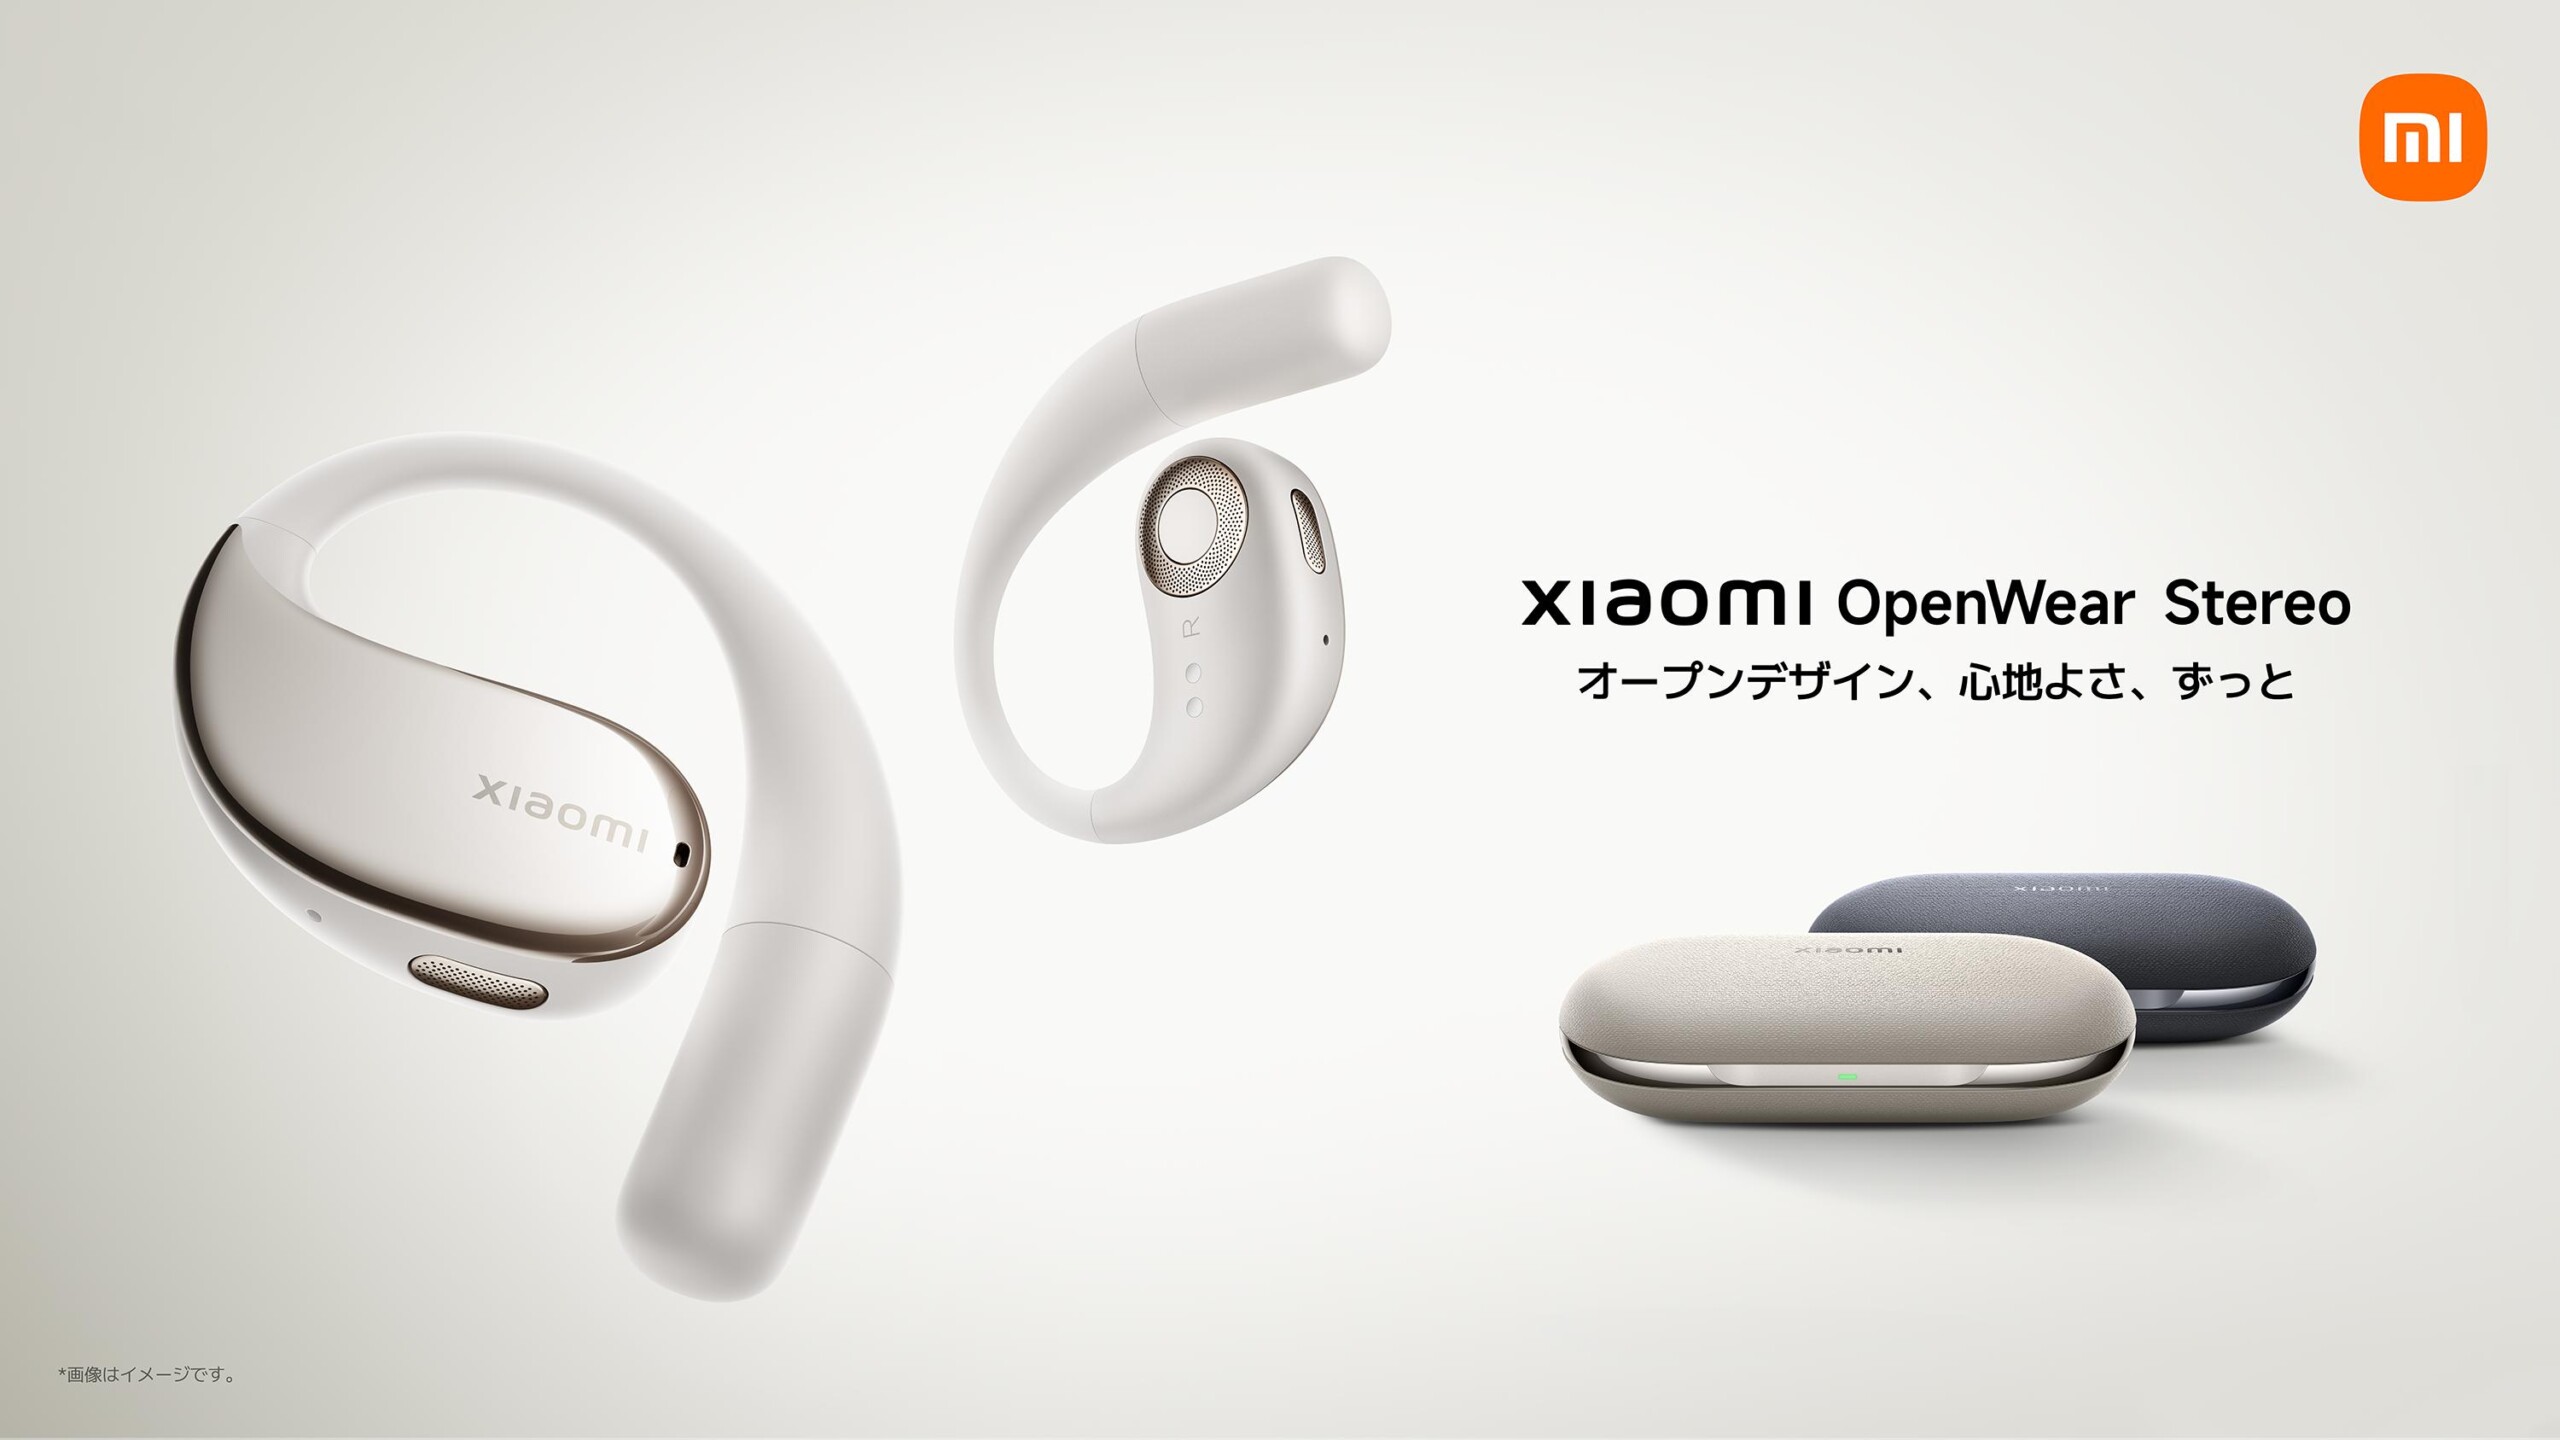 「オープンデザイン、心地よさ、ずっと」Xiaomiブランド初のオープン型完全ワイヤレスイヤホン「Xiaomi OpenW...